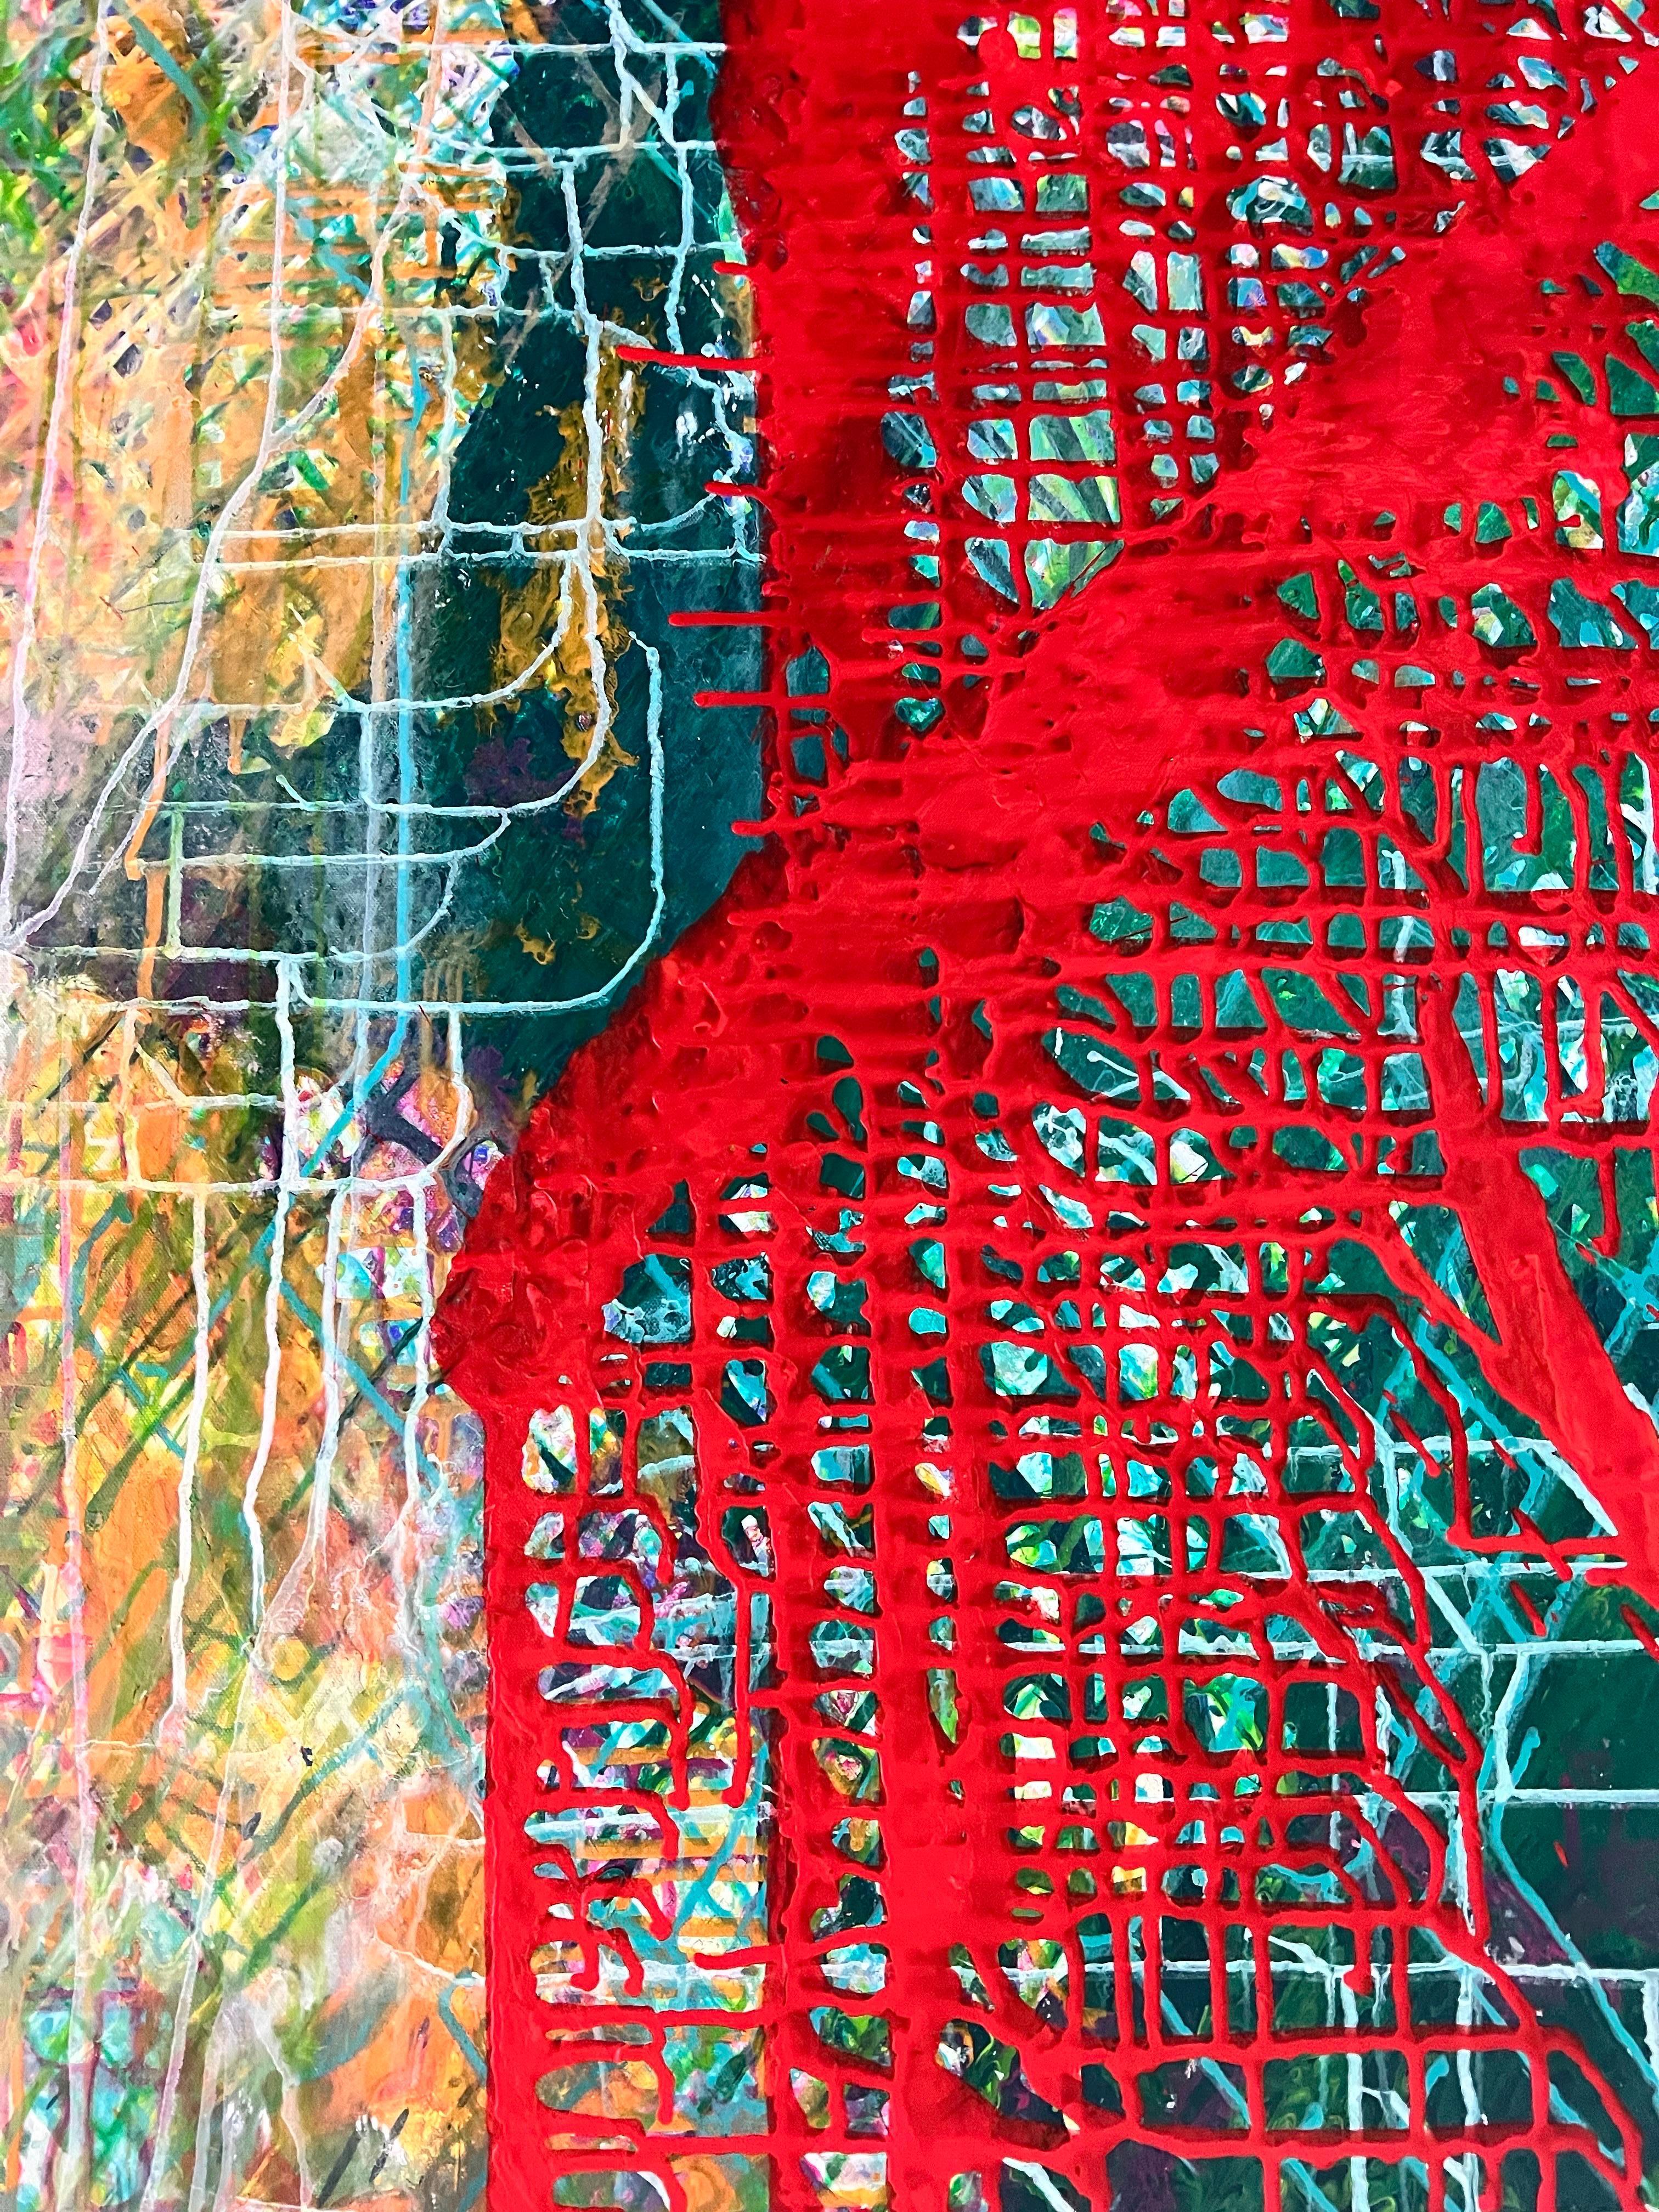 « Puzzle » n° 11, peinture à l'huile abstraite, 2018 - Impressionnisme abstrait Painting par Hsu Tung Lung